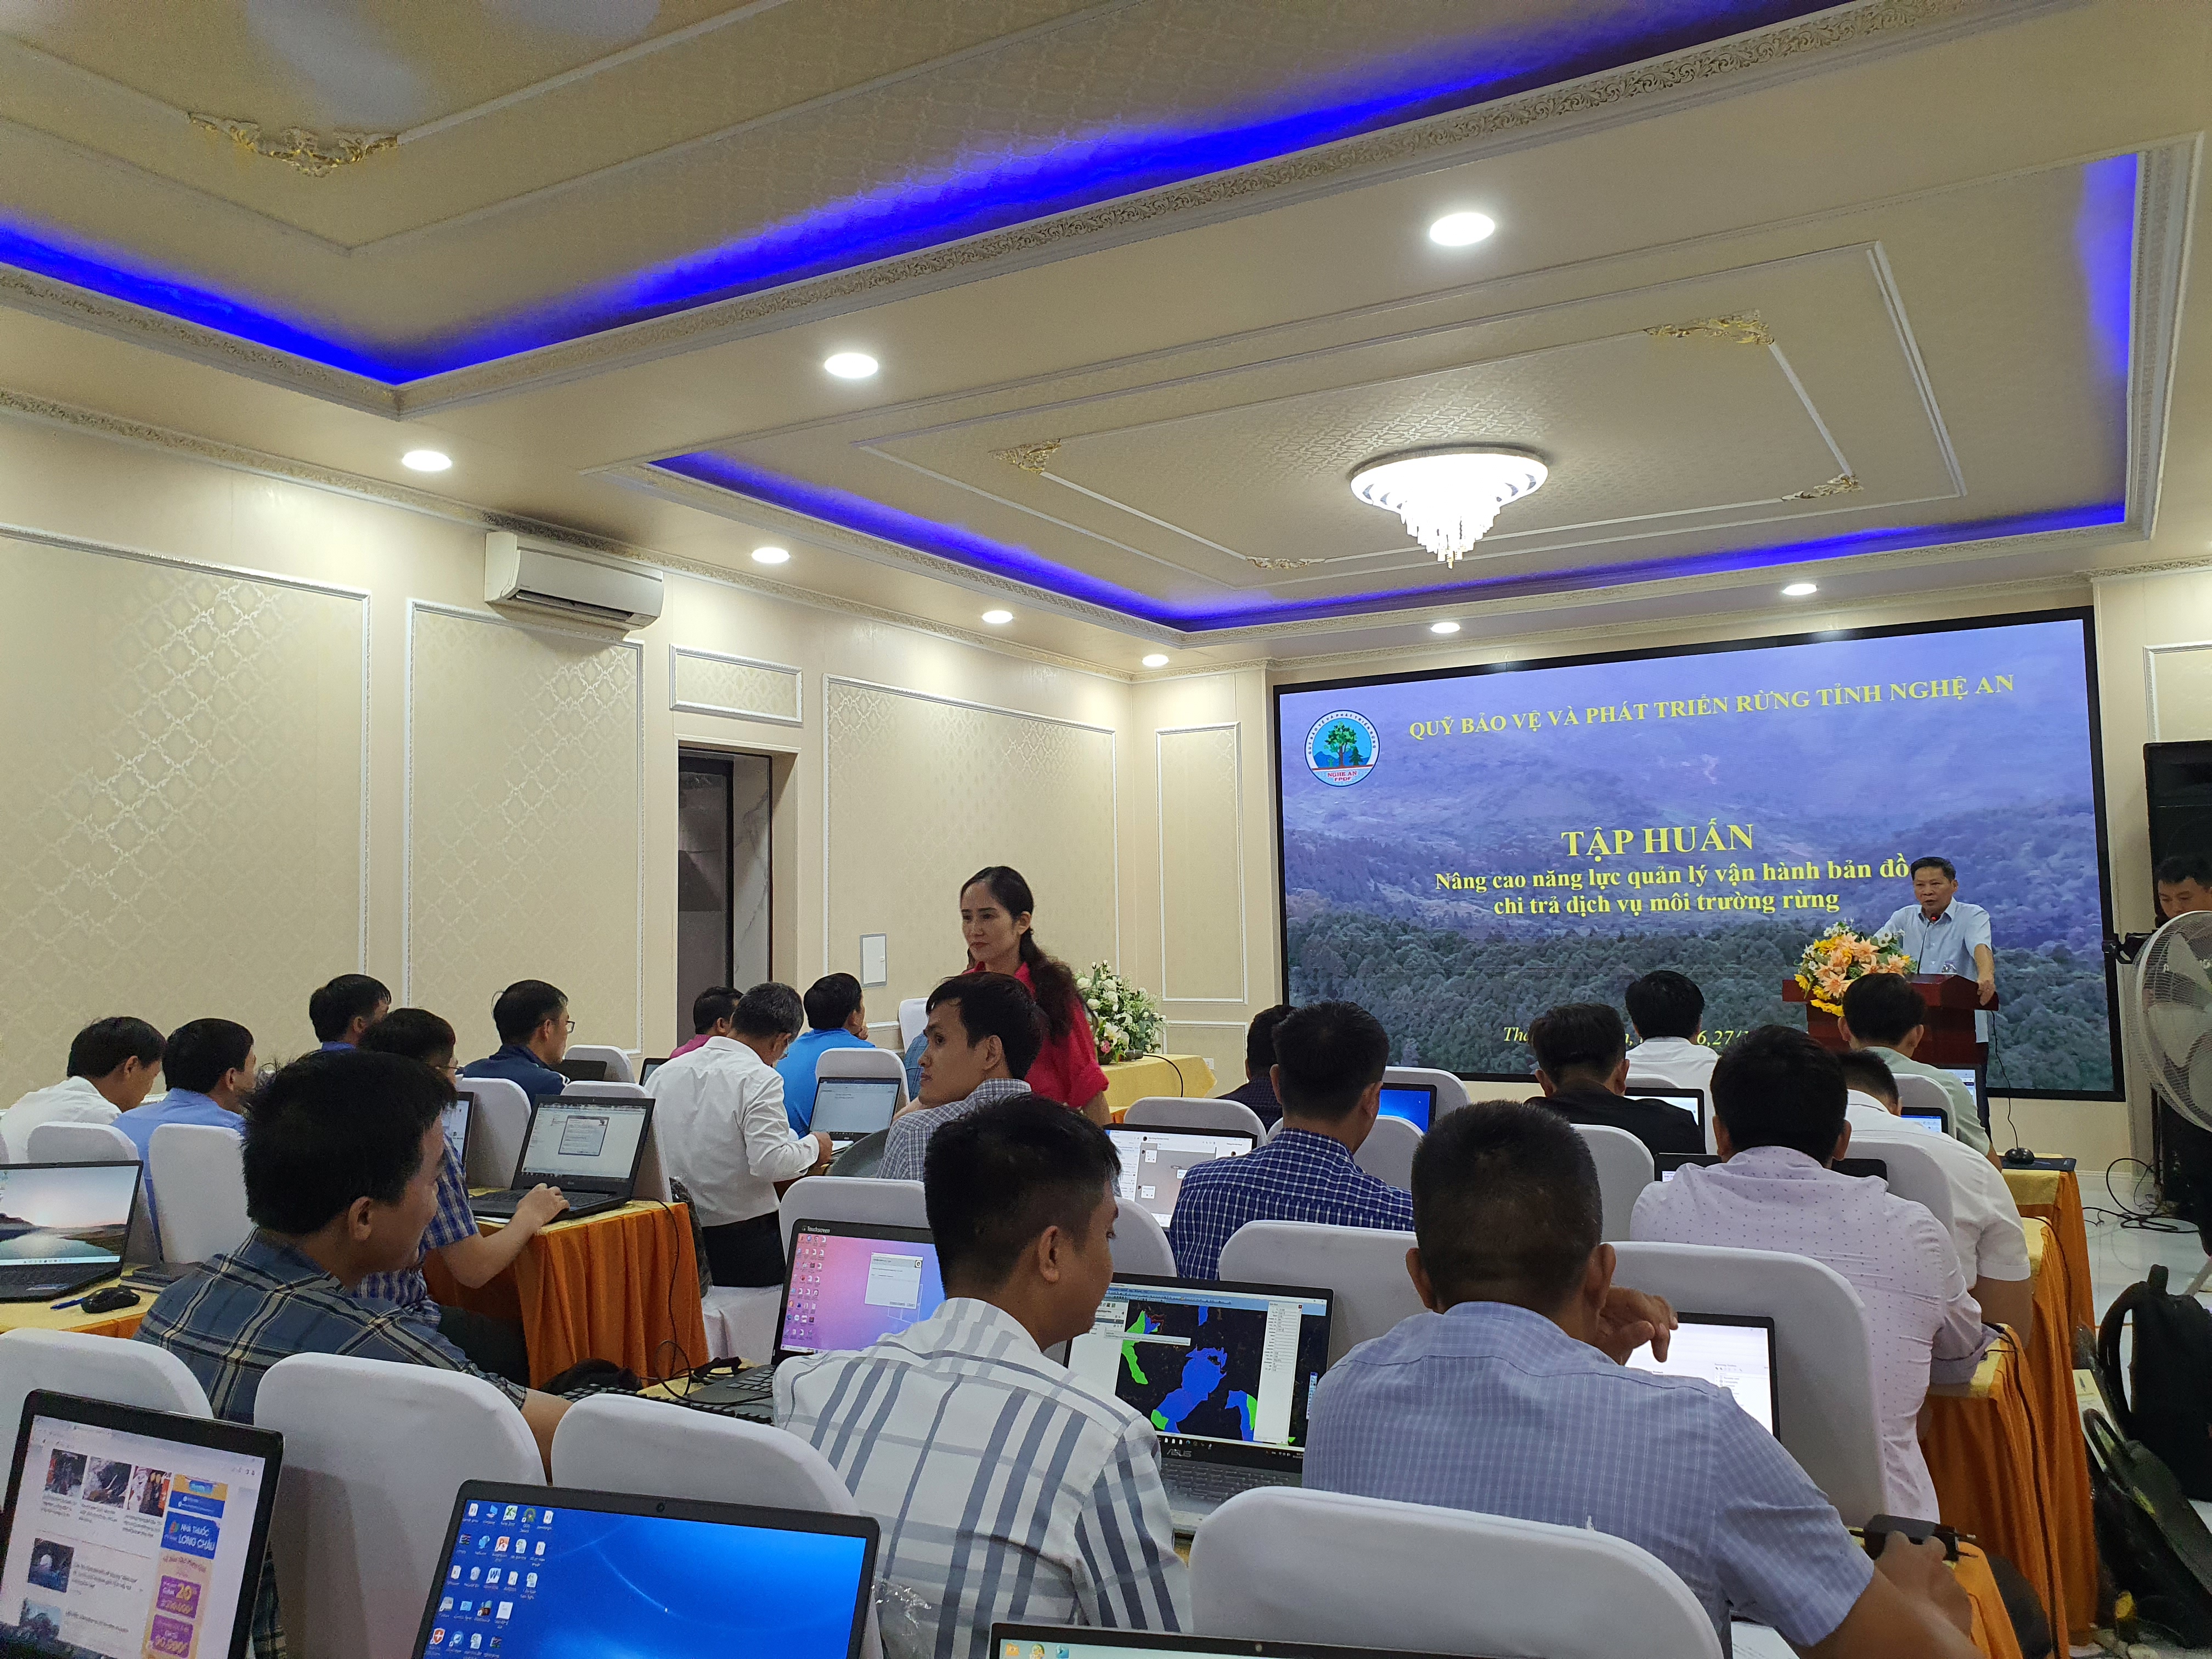 Quỹ Bảo vệ và phát triển rừng tỉnh Nghệ An tổ chức tập huấn nâng cao năng lực quản lý vận hành bản đồ chi trả dịch vụ môi trường rừng